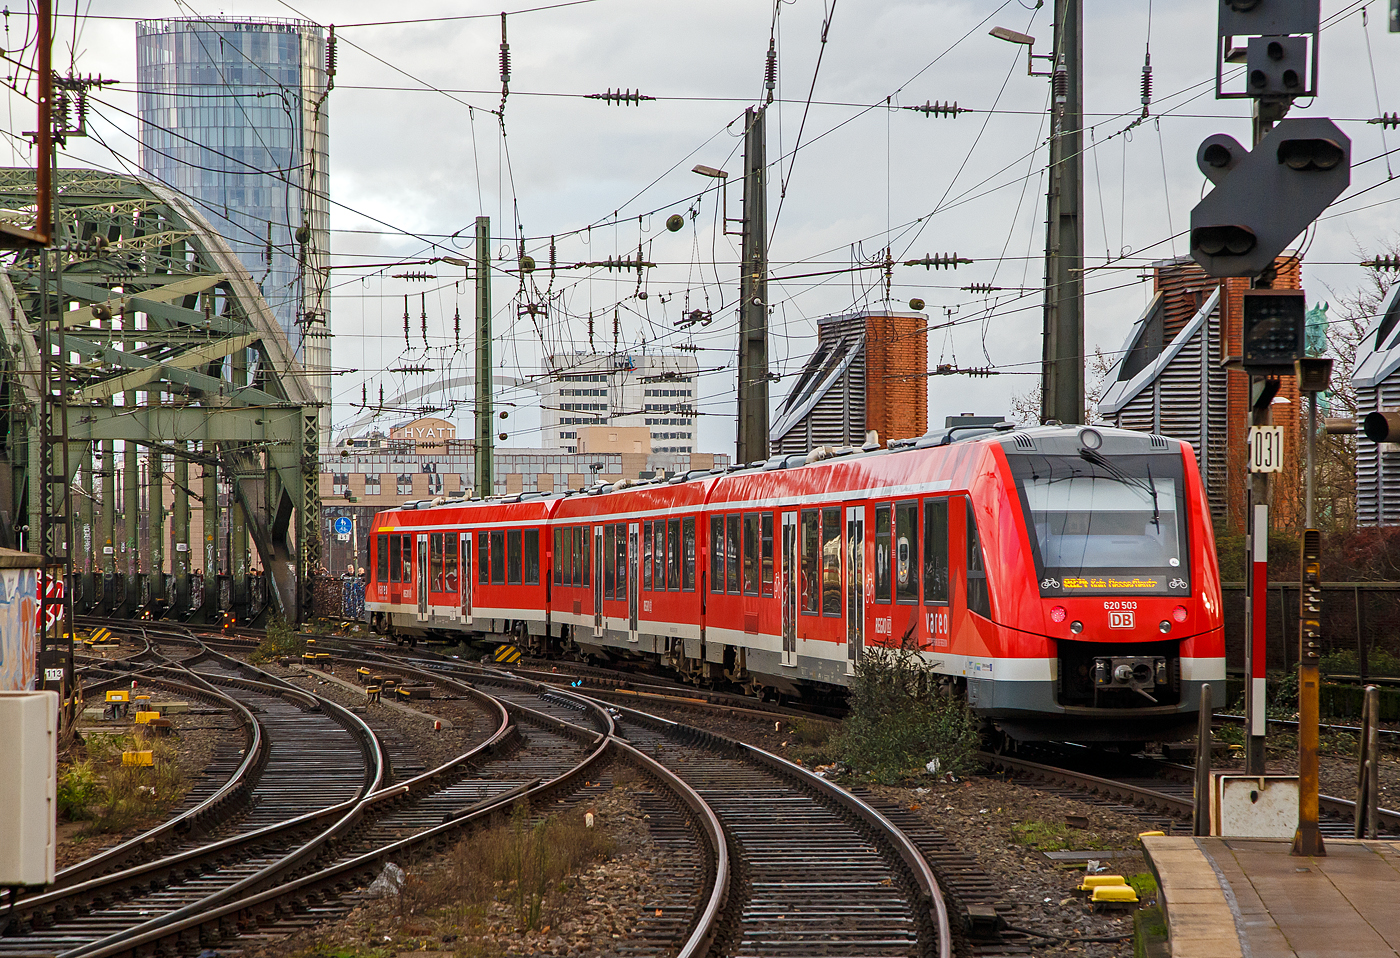 Der vareo 620 003 / 621 003 / 620 503, ein dreiteiliger Dieseltriebzug vom Typ ALSTOM Coradia LINT 81 der DB Regio NRW (VAREO), verlässt, als RB 24 „Eifel-Bahn“  (Gerolstein – Kall - Euskirchen – Köln Hbf - Köln Messe/Deutz), am 22.12.2018 den Hbf Köln in Richtung Hohenzollernbrücke bzw. Zielbahnhof Köln Messe/Deutz.